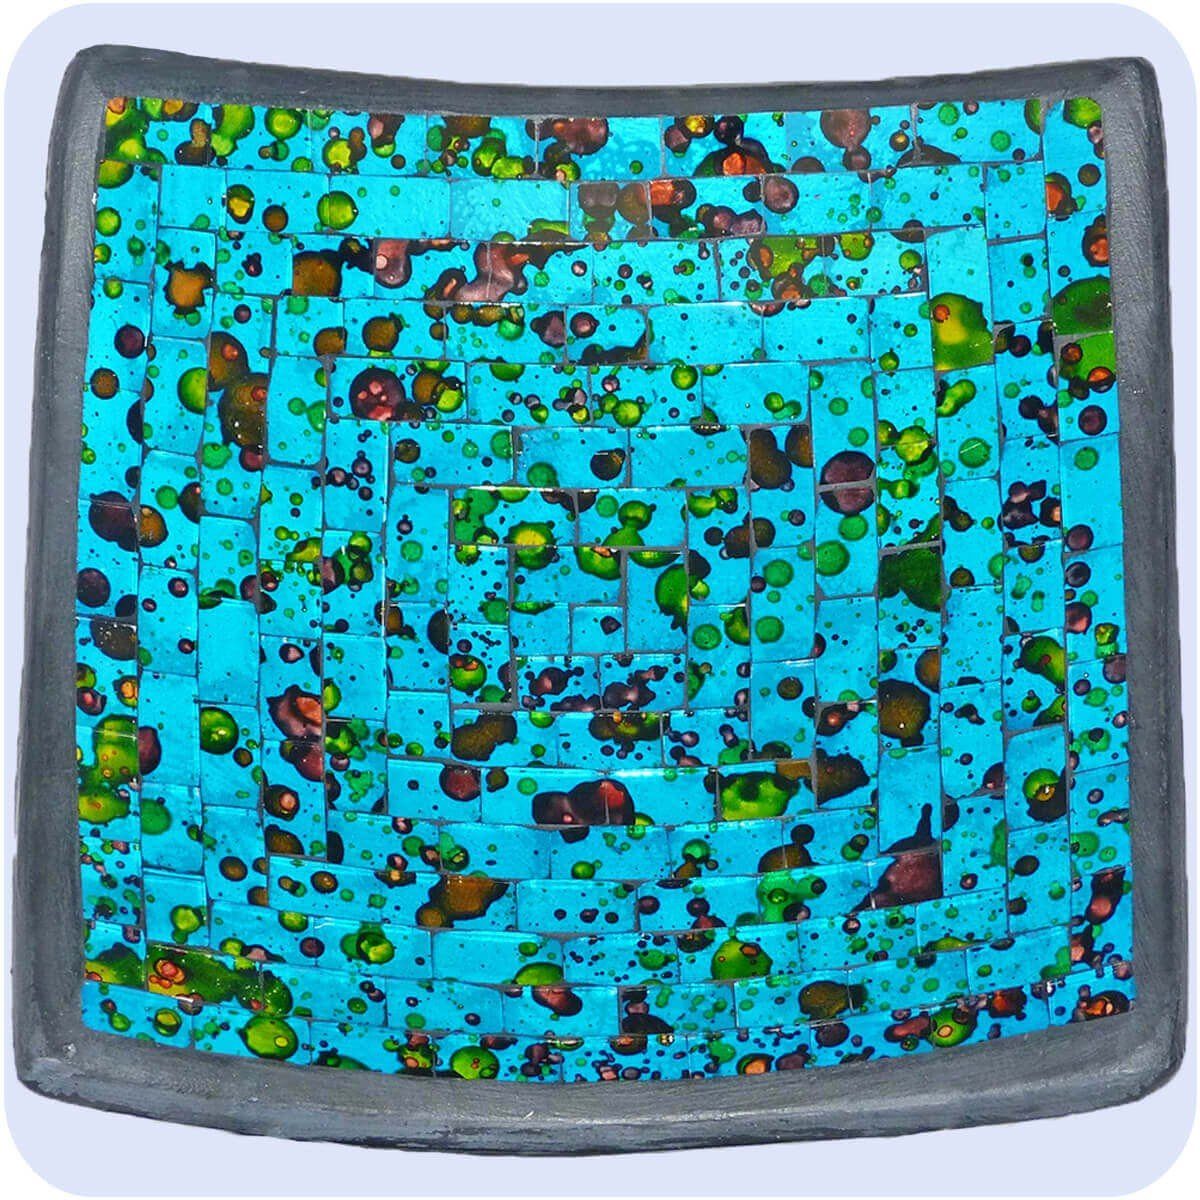 Mosaikschale bunt Blau SIMANDRA Dekoschale Quadrat groß Tonschale